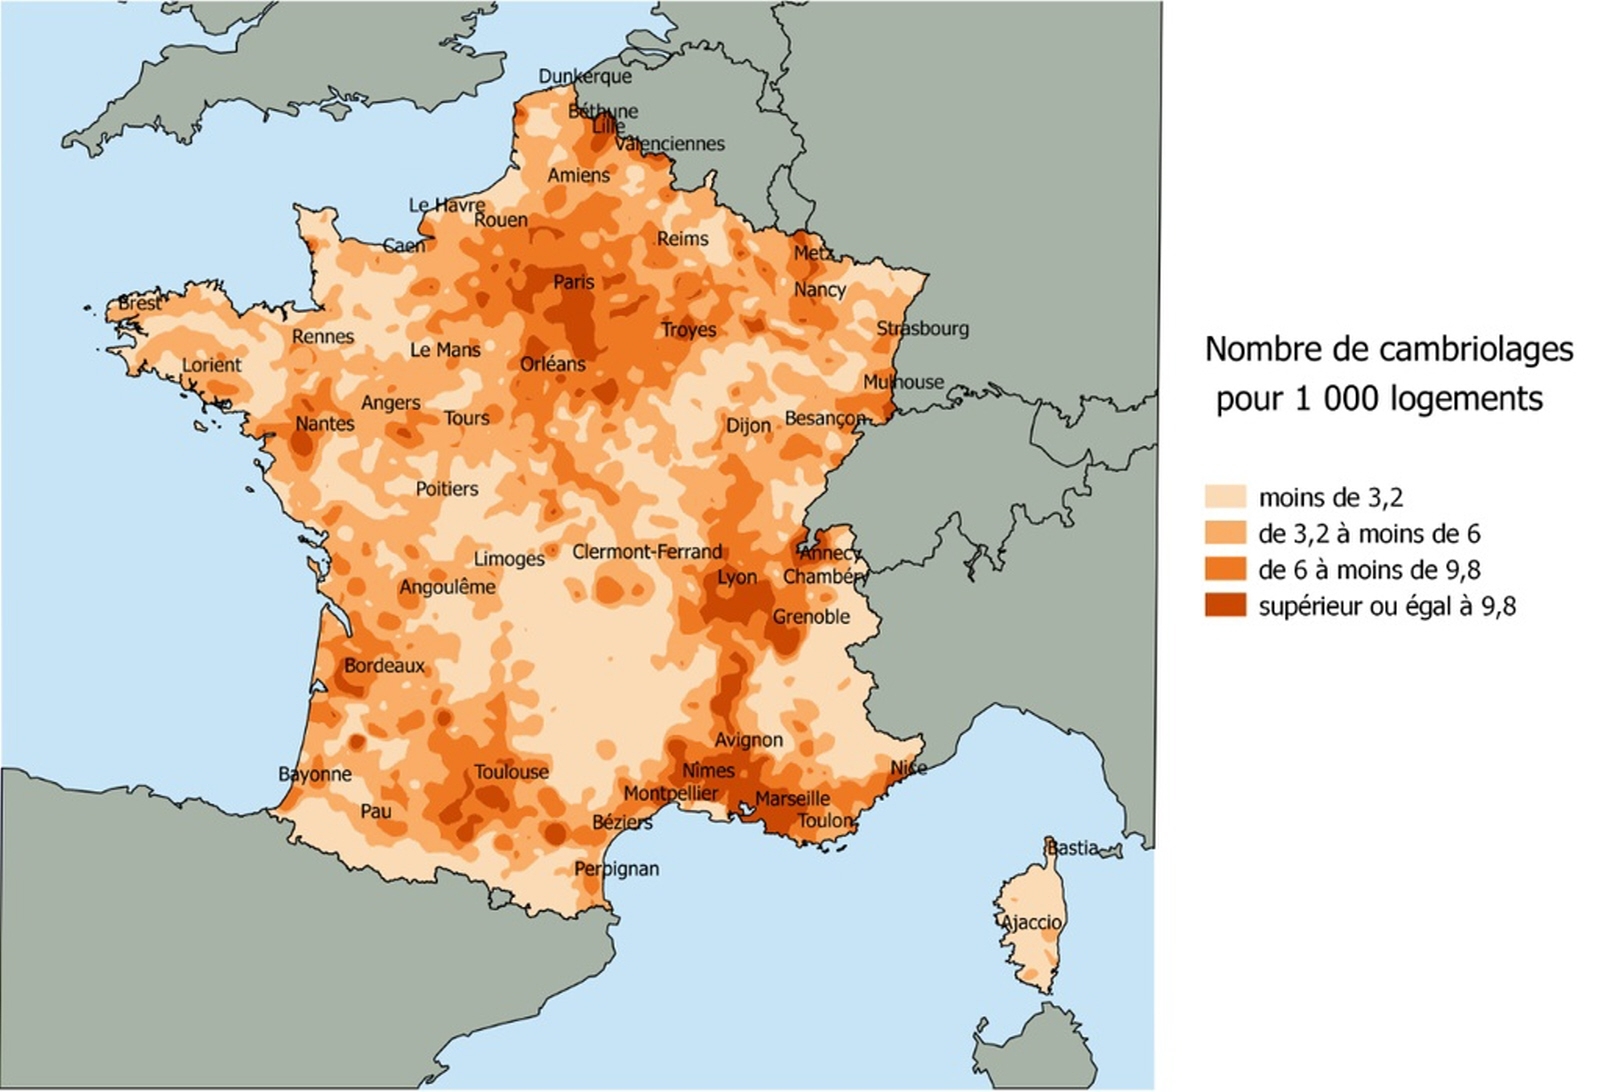 La carte du nombre de cambriolages pour 1000 logements publiée ce mardi par le ministère de l’Intérieur montre que l’intensité des cambriolages est particulièrement forte en Ile de France, dans les régions du Sud et en vallée du Rhône. (infographie : Ministère de l'Intérieur, France)